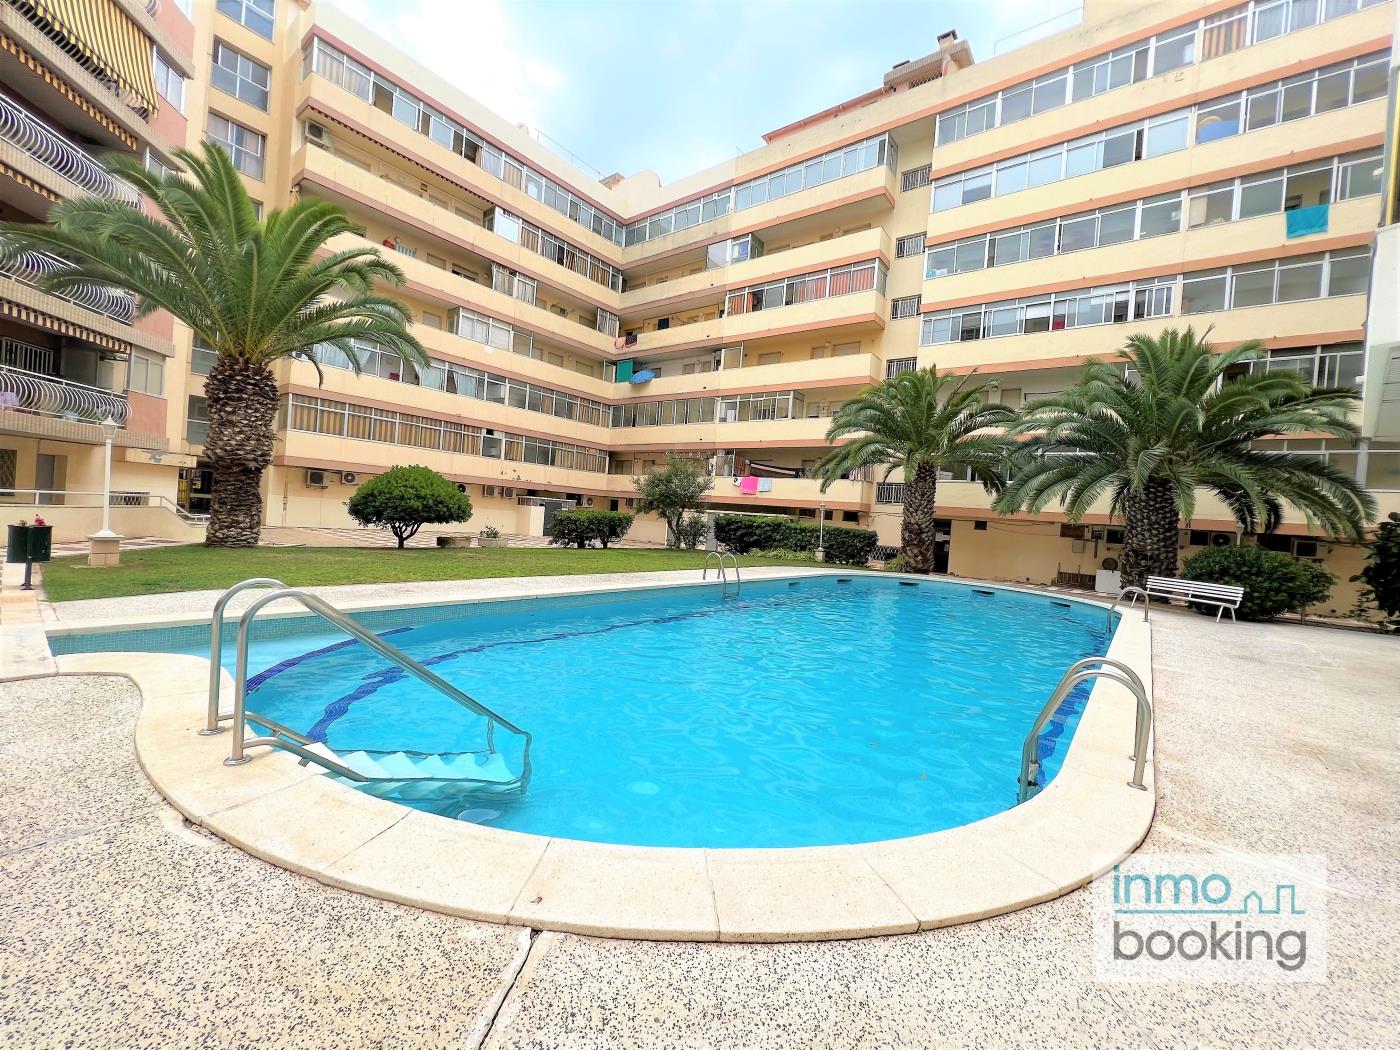 Indasol Apartments, climatitzat i amb piscina a Salou